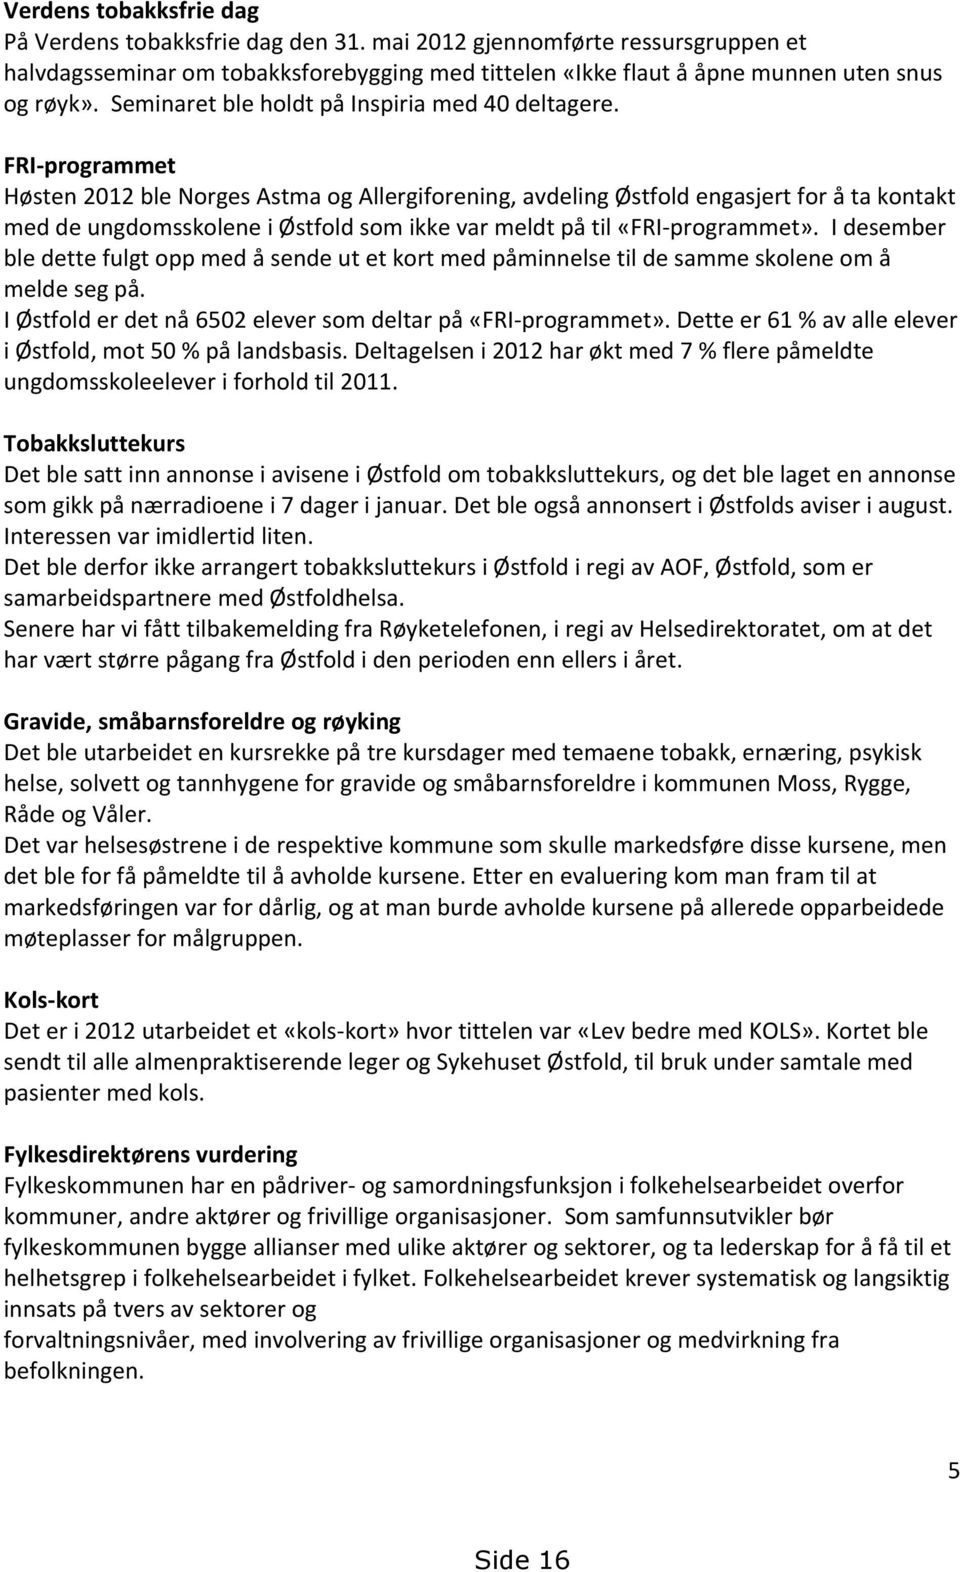 FRI-programmet Høsten 2012 ble Norges Astma og Allergiforening, avdeling Østfold engasjert for å ta kontakt med de ungdomsskolene i Østfold som ikke var meldt på til «FRI-programmet».